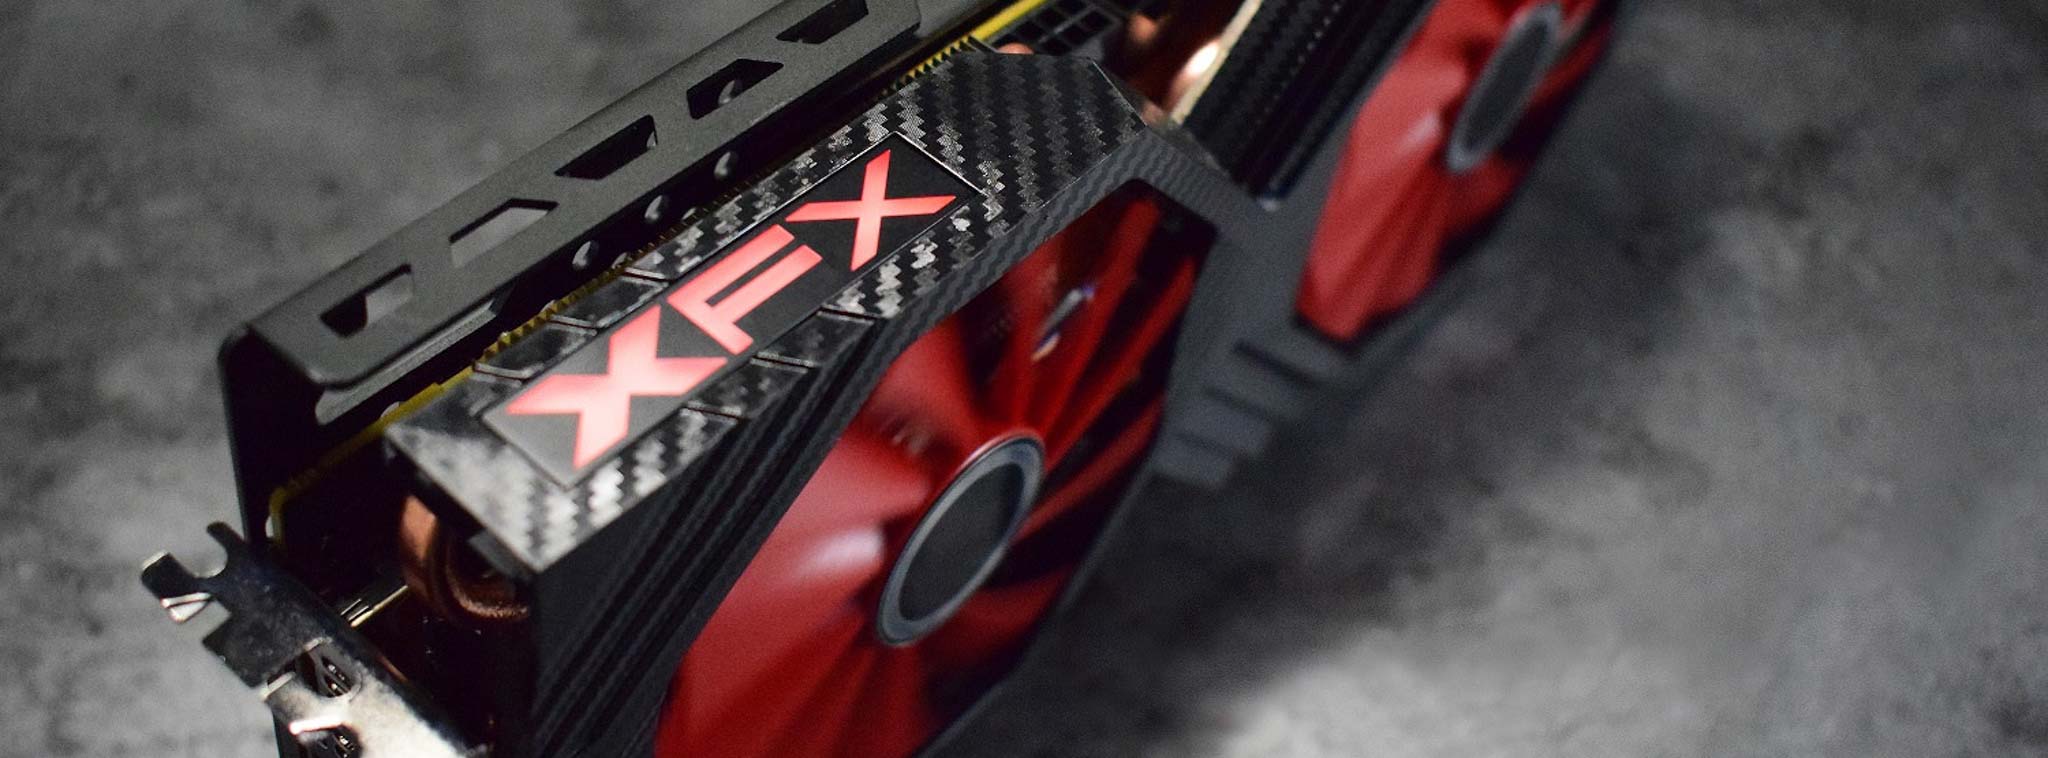 Radeon RX Vega 64 và RX Vega 56 có thêm bản custom của XFX